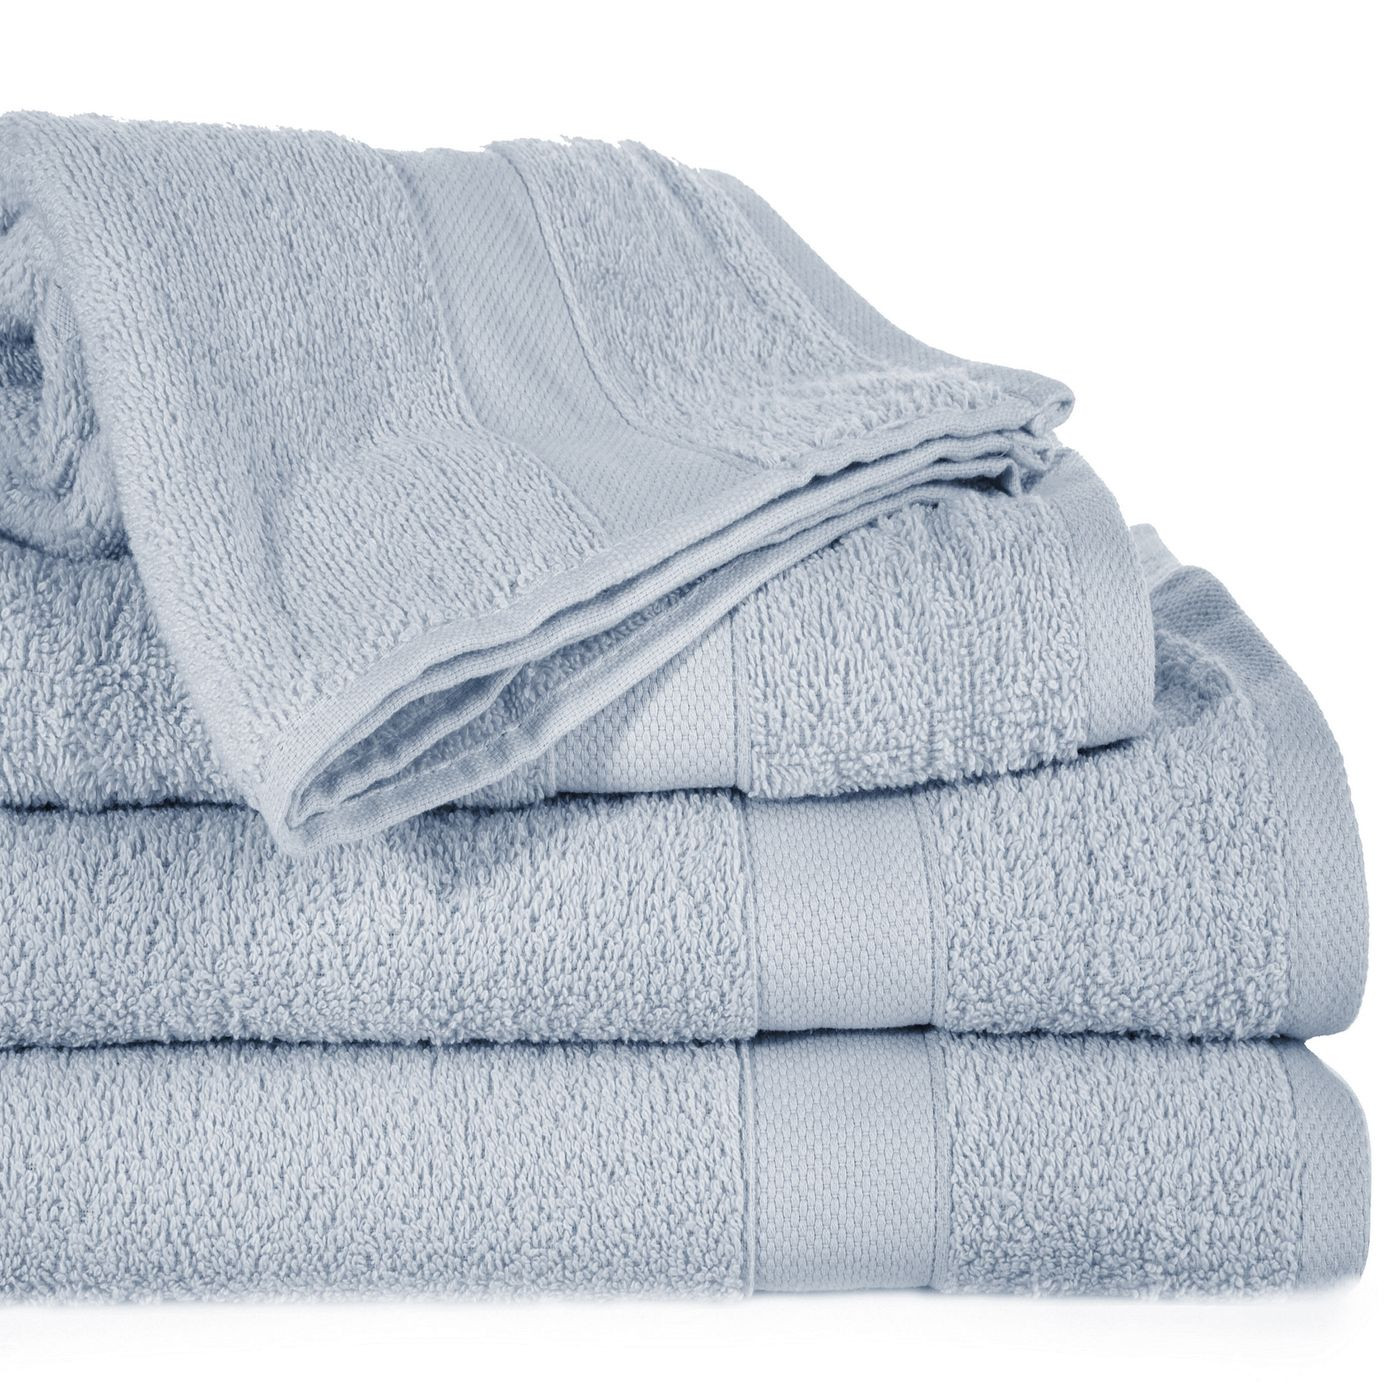 Miękki chłonny ręcznik kąpielowy srebrny 50x90